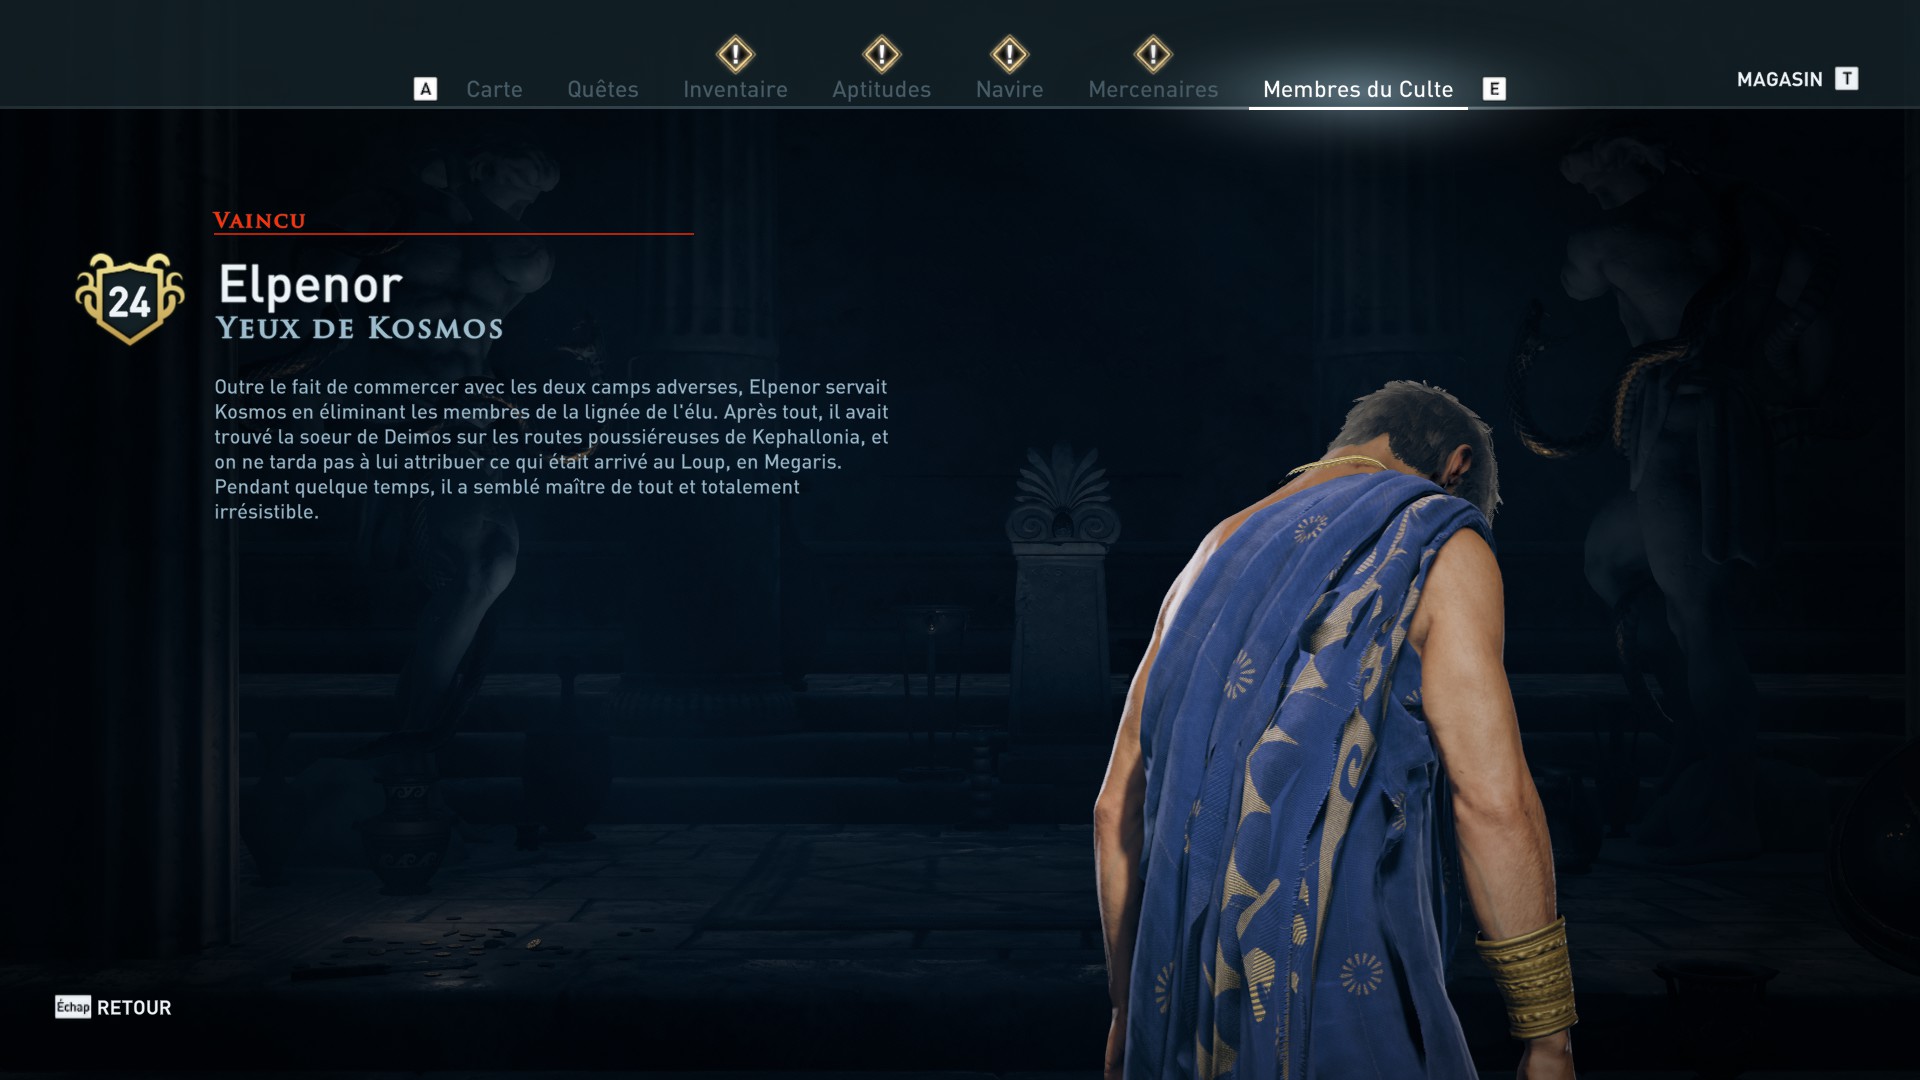 Assassin's Creed Odyssey trouver et tuer les adeptes du culte du Kosmos, ps4, xbox one, pc, ubisoft, jeu vidéo, Yeux de Kosmos, elpenor